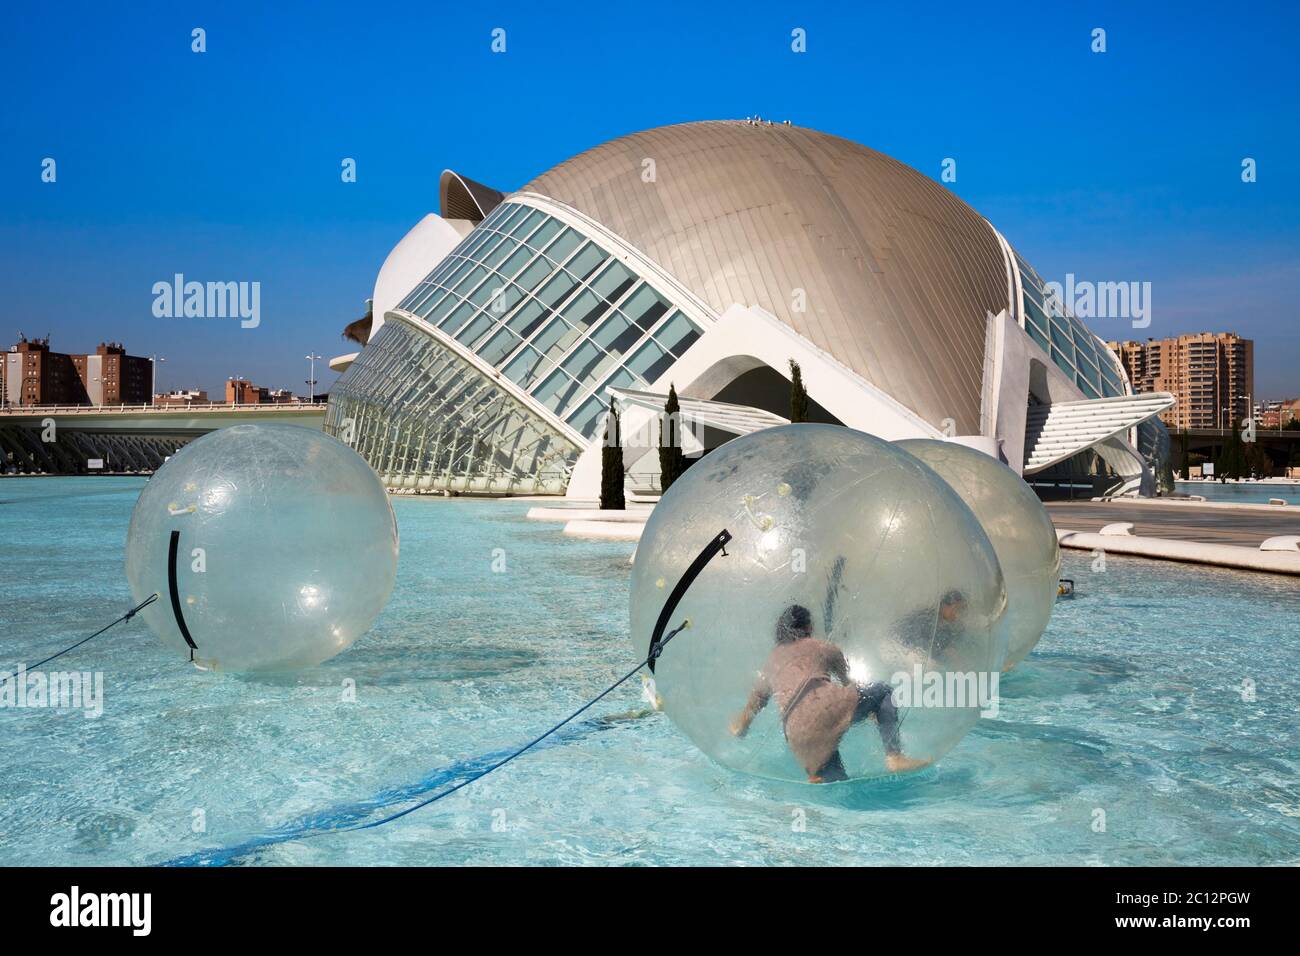 Touristes s'amusant à l'intérieur de grandes sphères flottantes transparentes au parc scientifique, Valence, Espagne. Banque D'Images